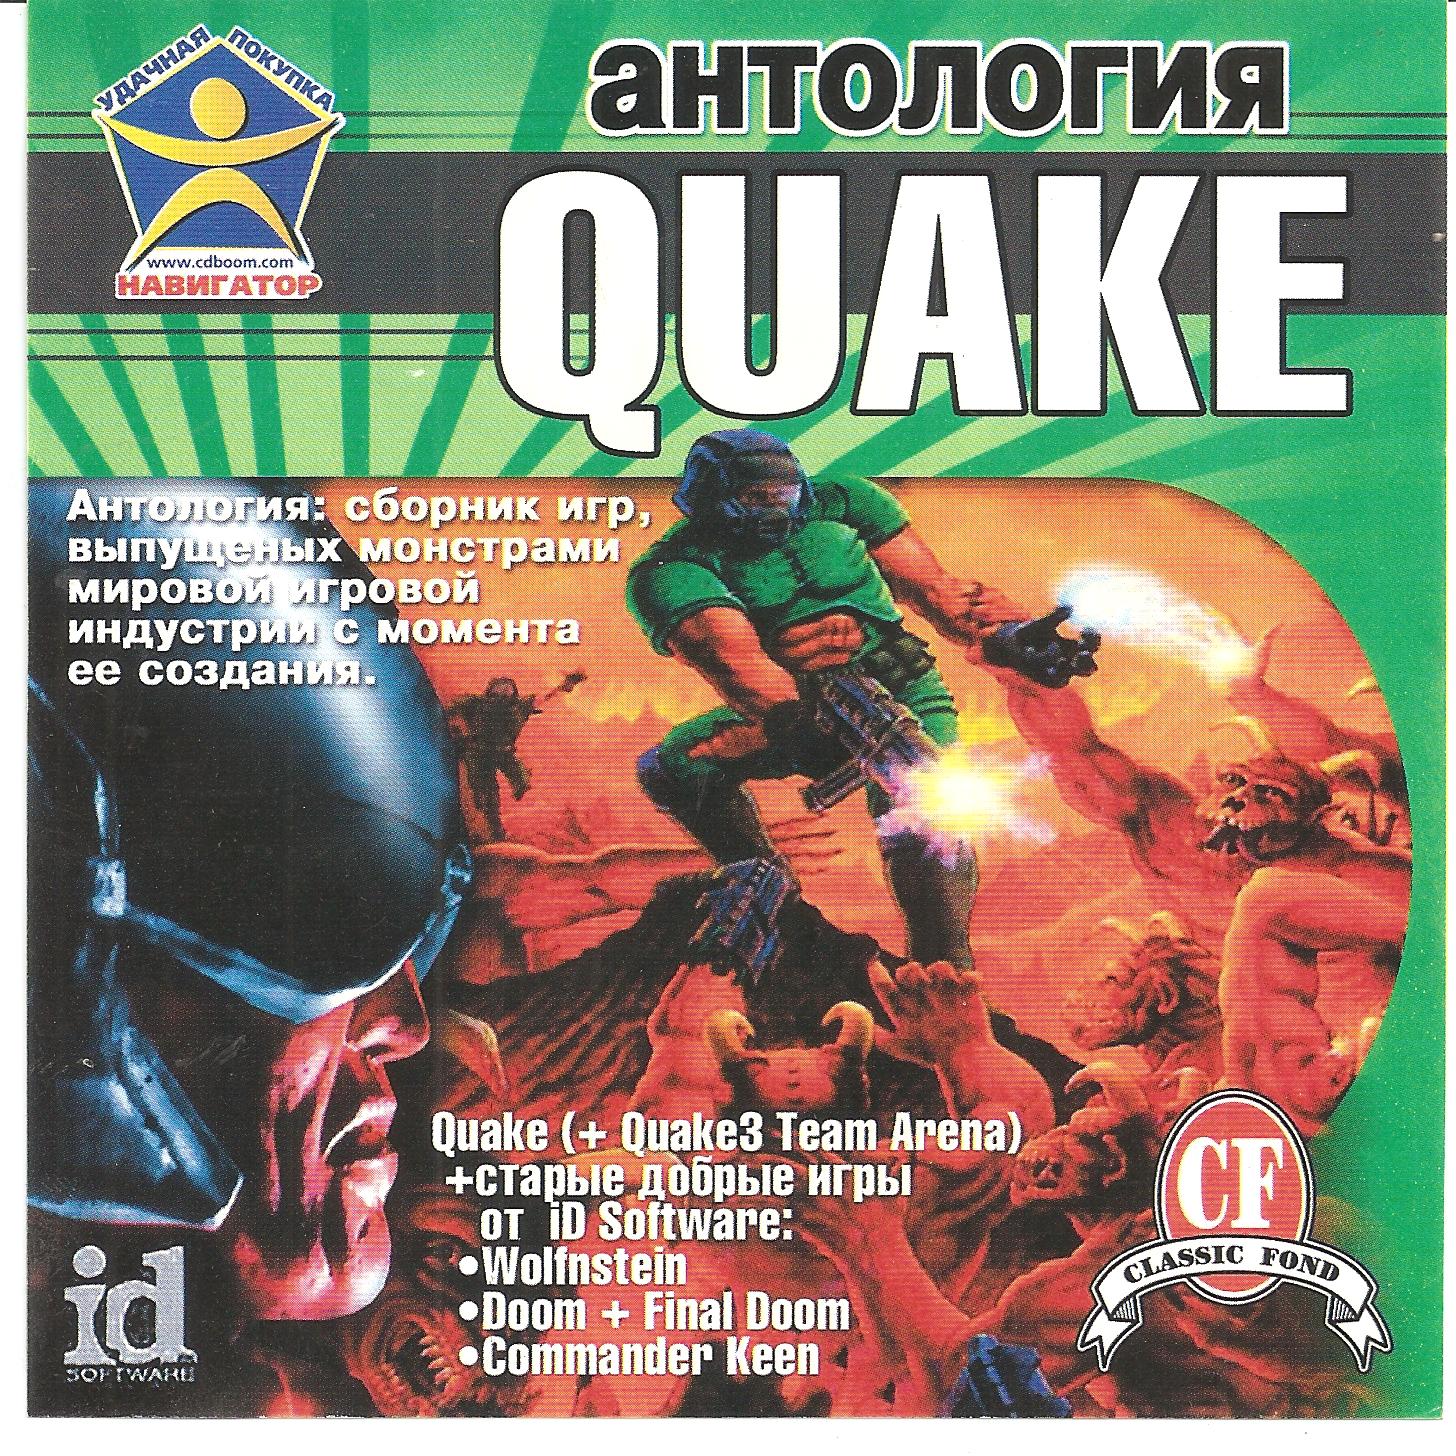 Антология человека. Антология игр. Quake антология. Антология сборник игр. Quake 3 антология.